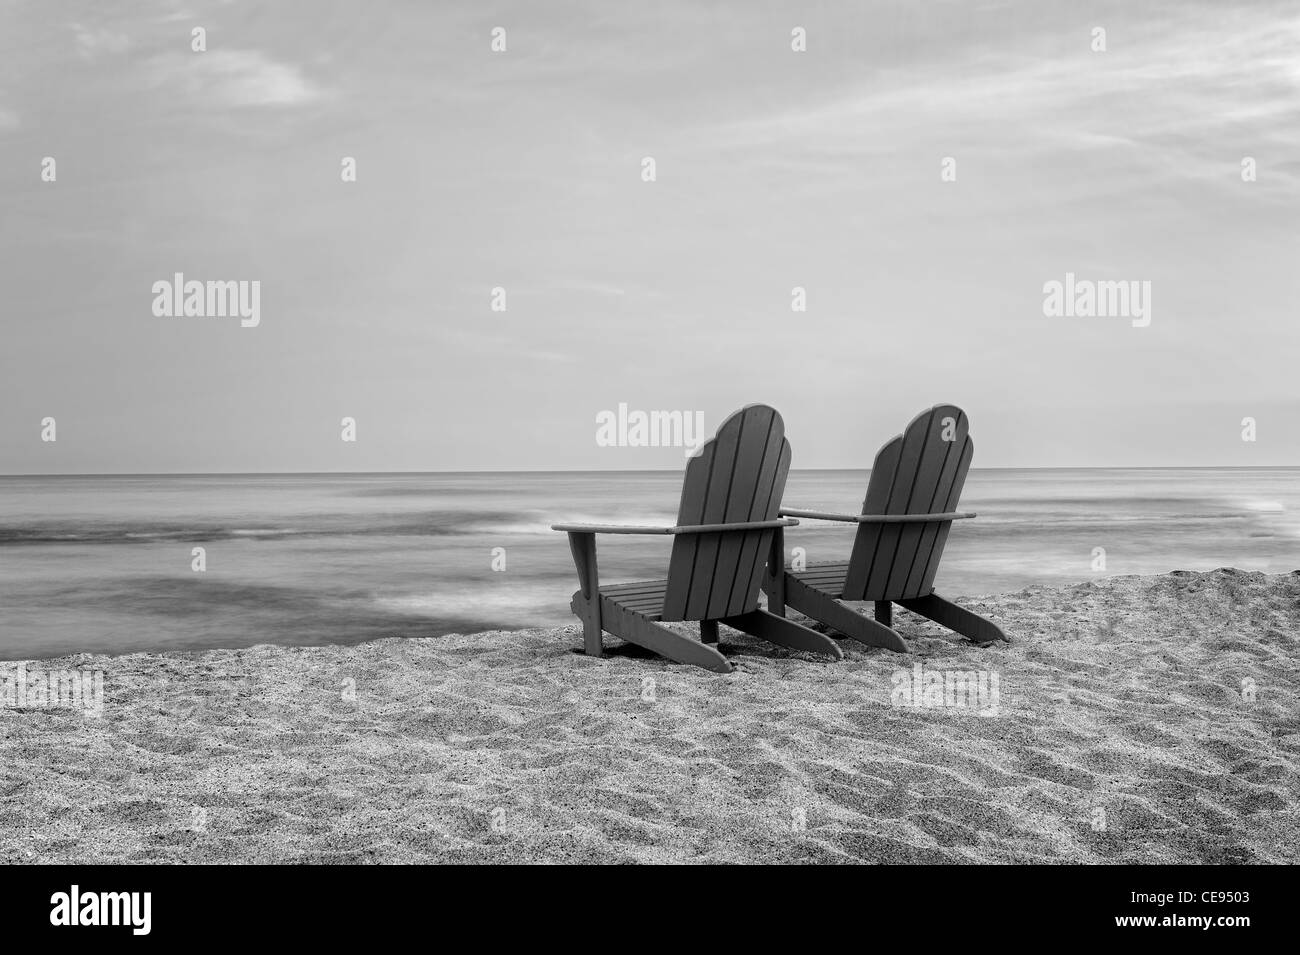 Deux chaises Adirondack sur plage. New York, la Grande Île Banque D'Images